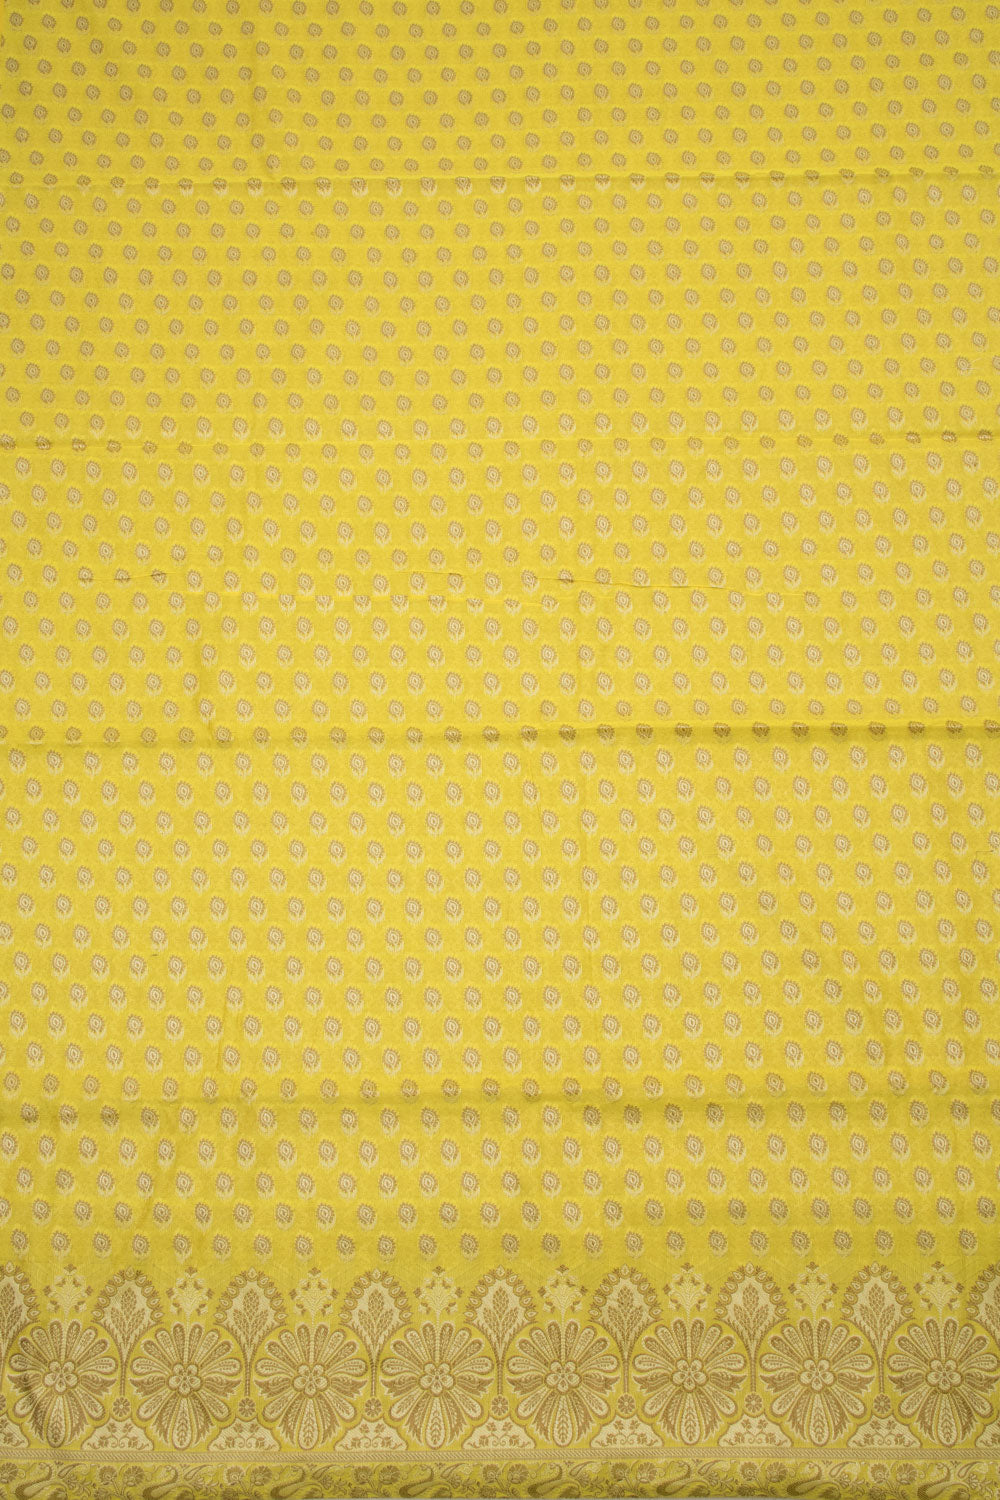 Lemon Yellow Banarasi Cotton Salwar Suit Material 